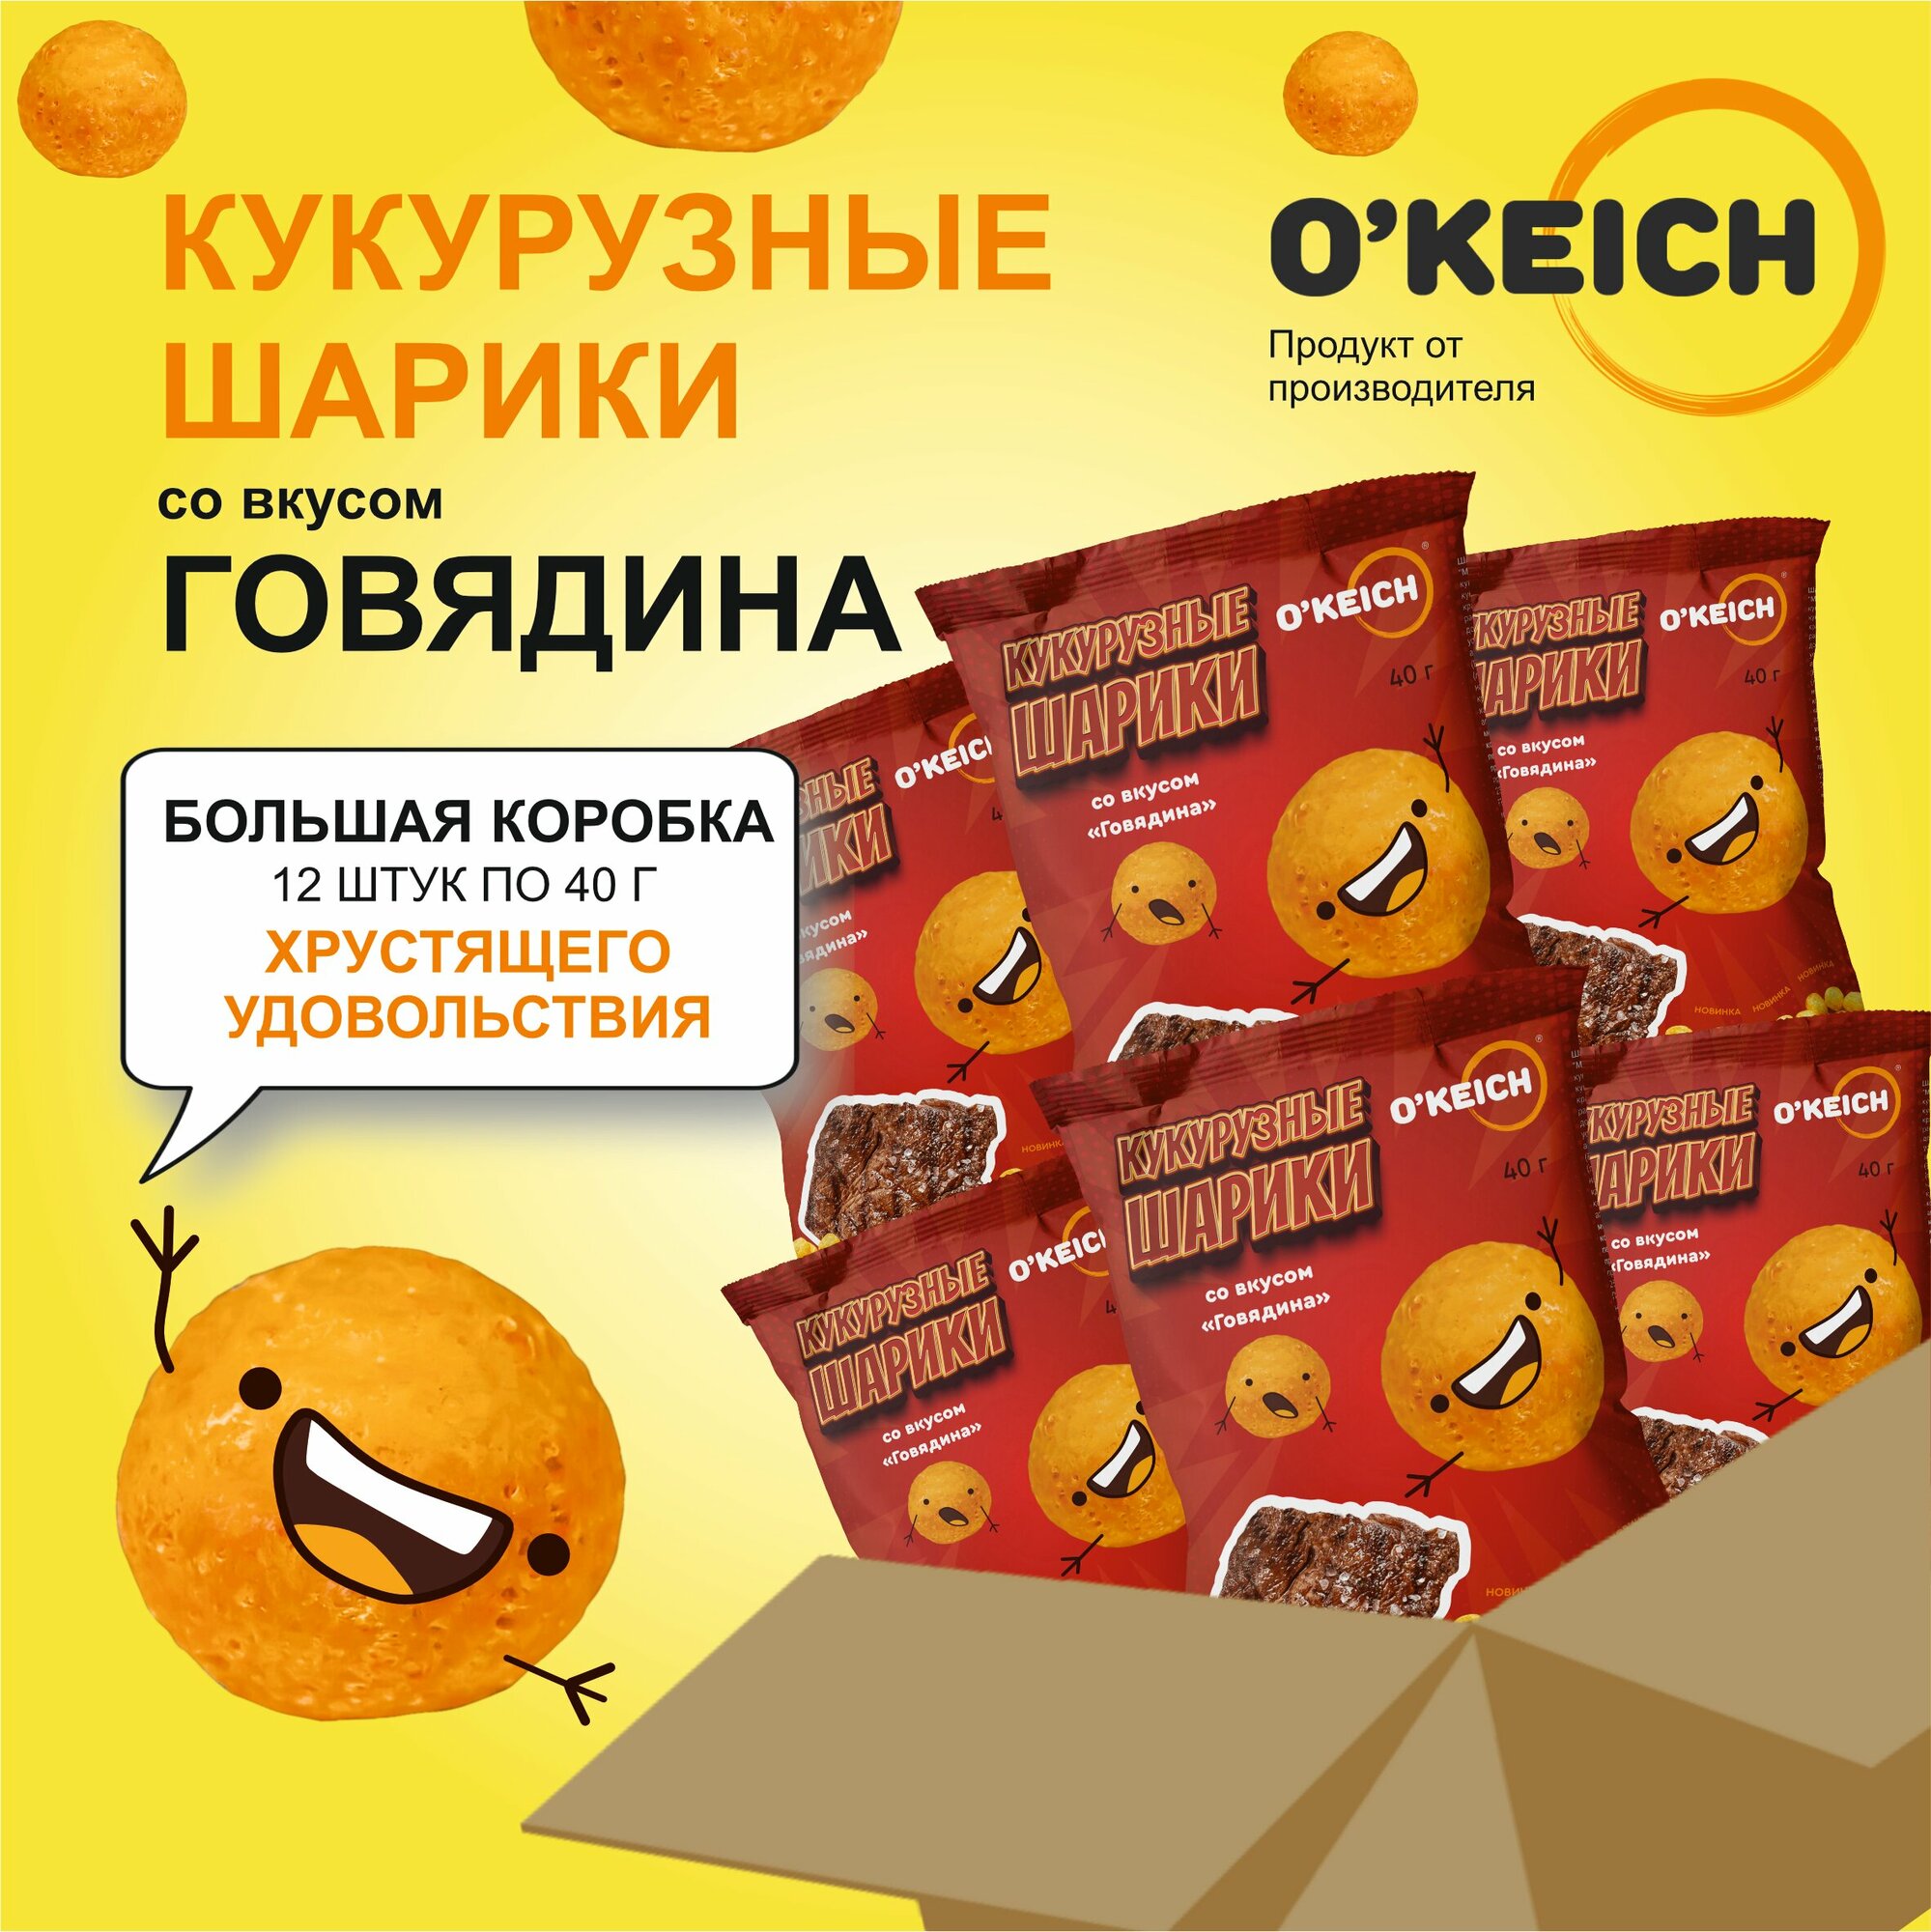 Кукурузные шарики со вкусом "Говядина" - 12 упаковок по 40 грамм